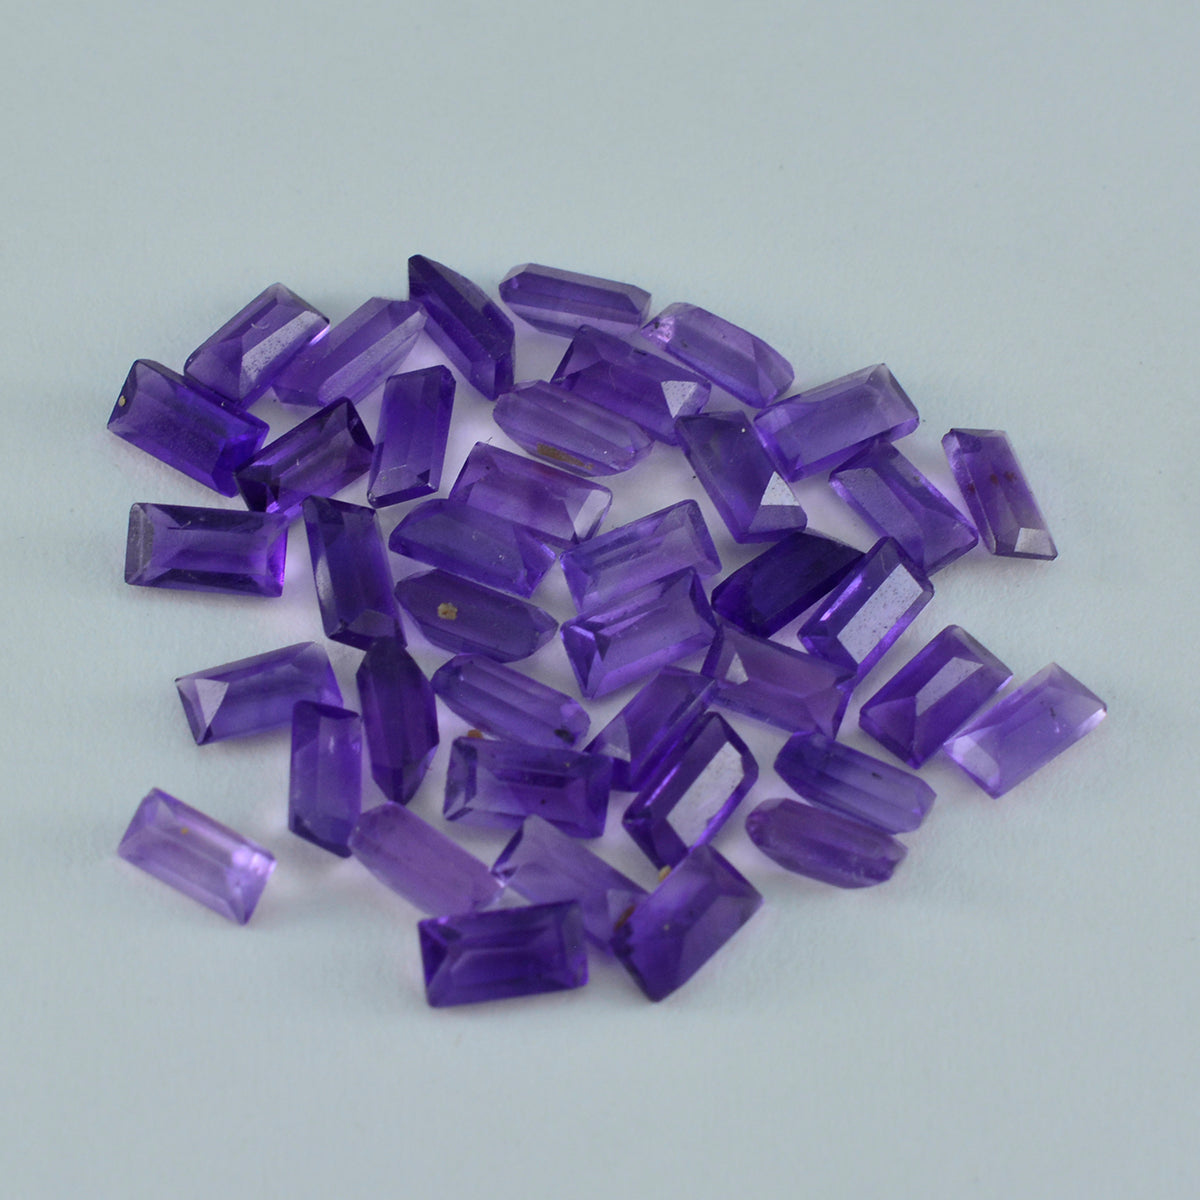 Riyogems 1PC Genuine Purple Amethyst Faceted 4x8 mm Baguett Shape nice-looking Quality Loose Gemstone